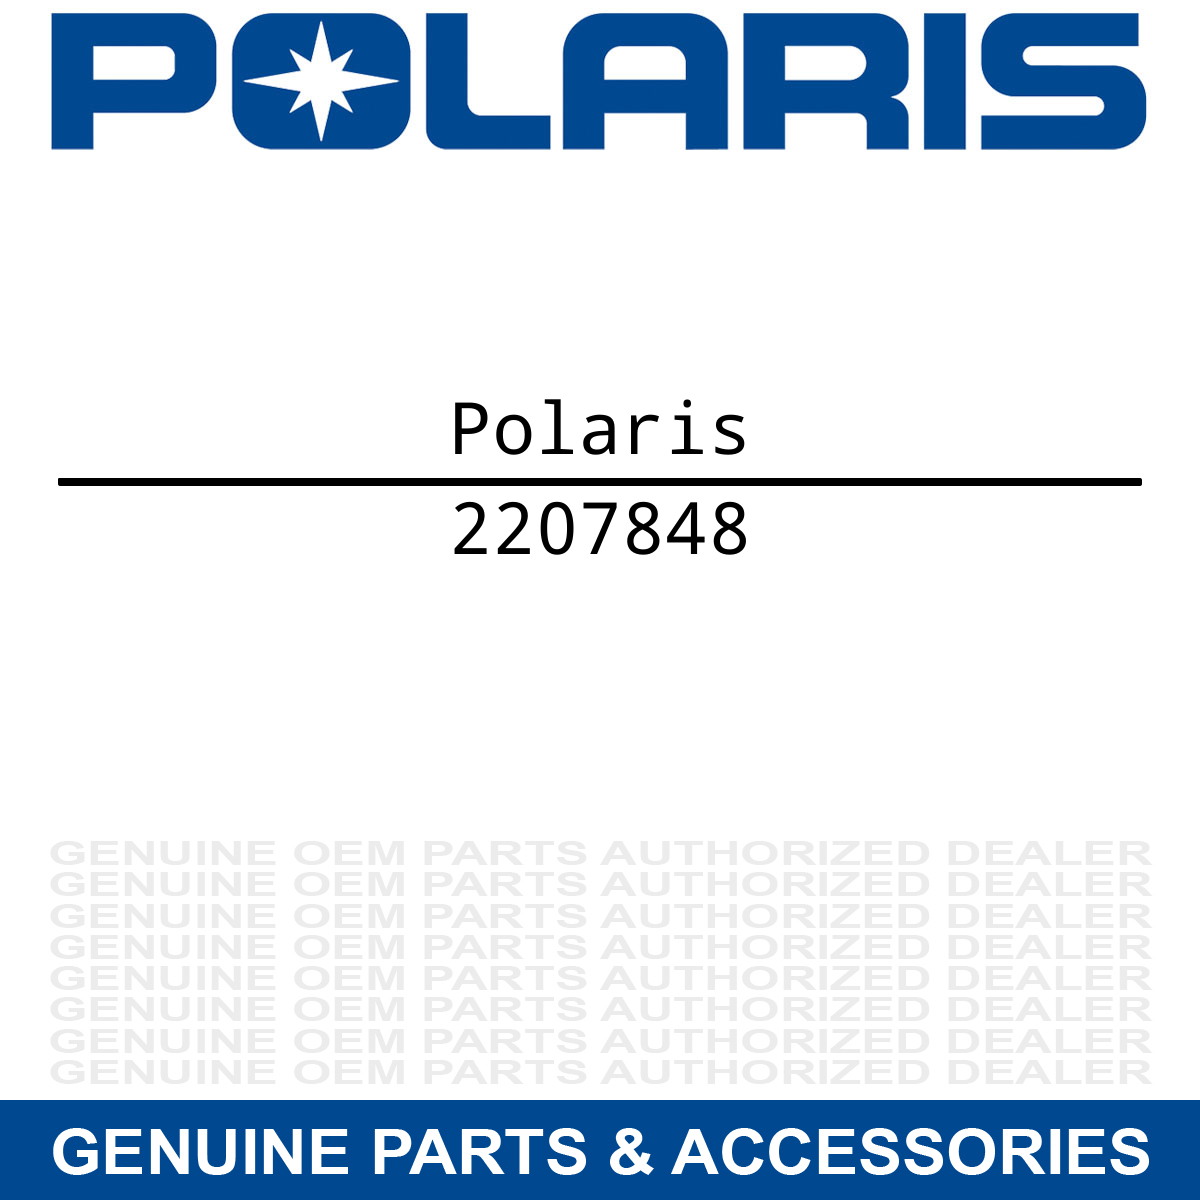 Polaris 2207848